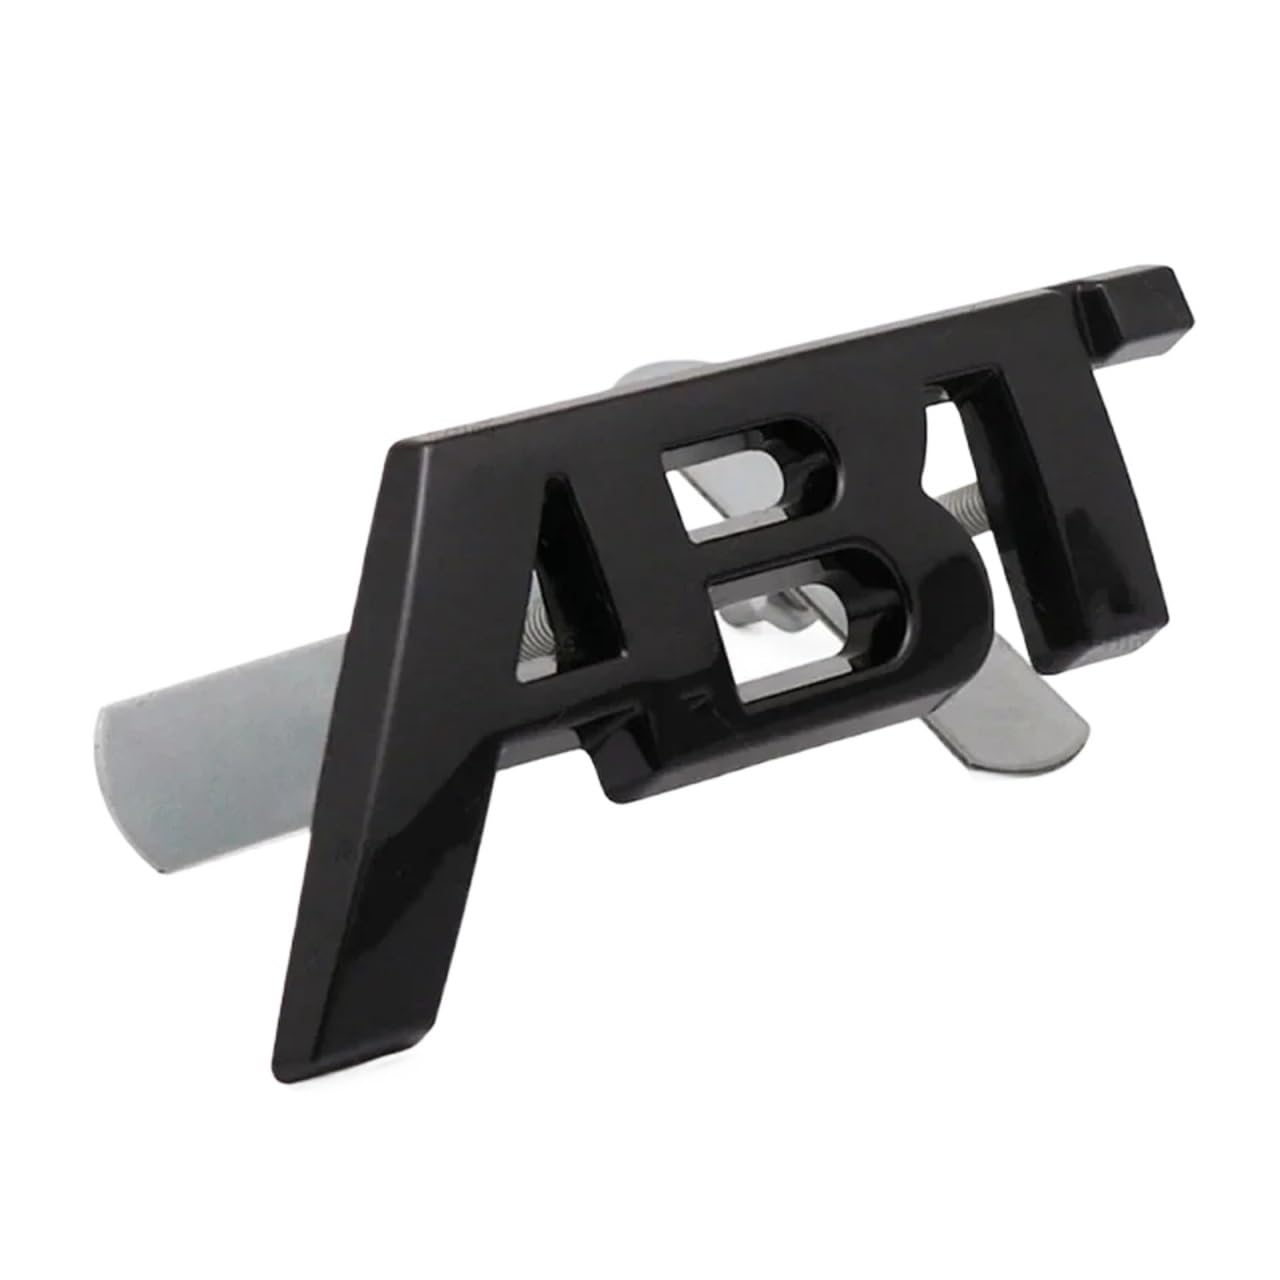 3D-Metall-ABT-Logo for Frontgrill, Seitenabzeichen, Heckkofferraum-Emblem, Autoaufkleber, kompatibel mit A3 A4 A5 A6 A7 A8 Q3 Q5 Q7 TT RS(Glossy black grill,11.2cm x 4.6cm) von NRUOS